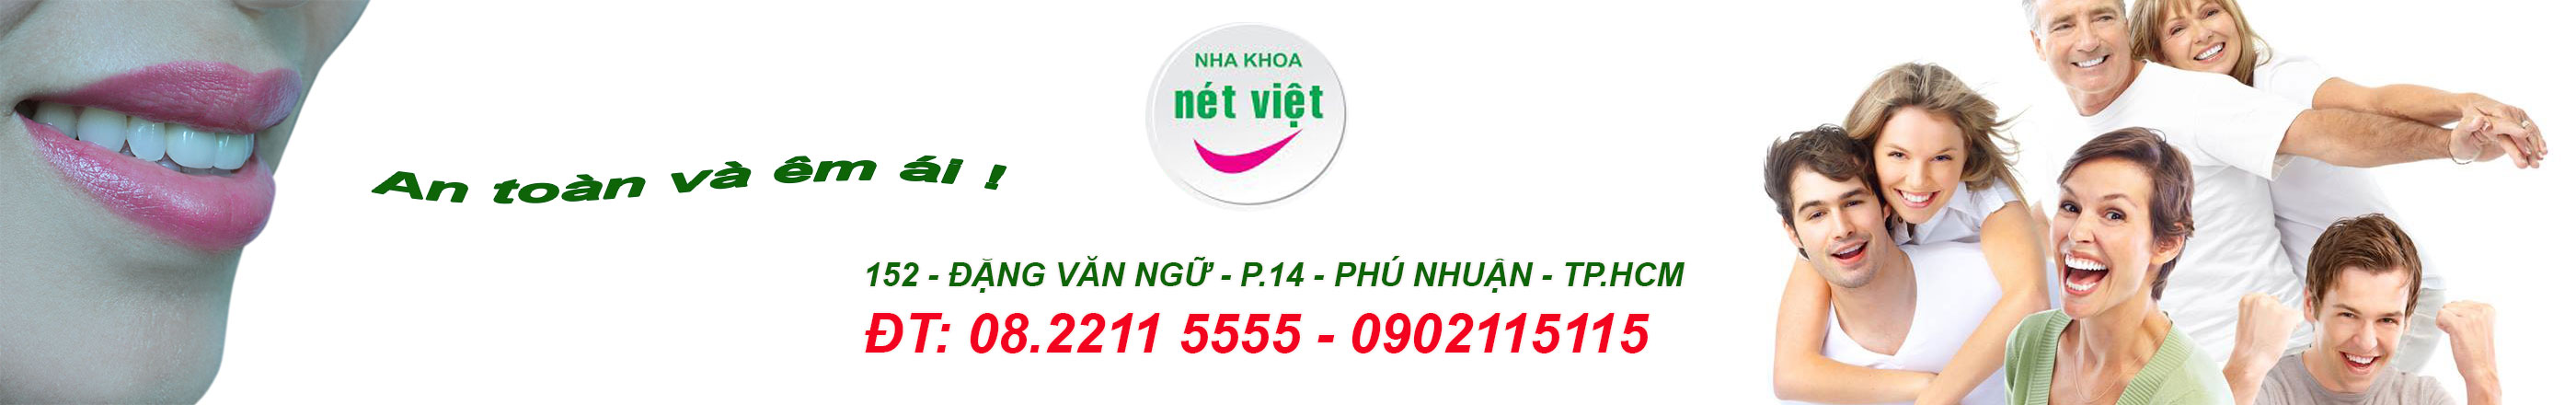 Nha khoa Thẩm mỹ Nét Việt